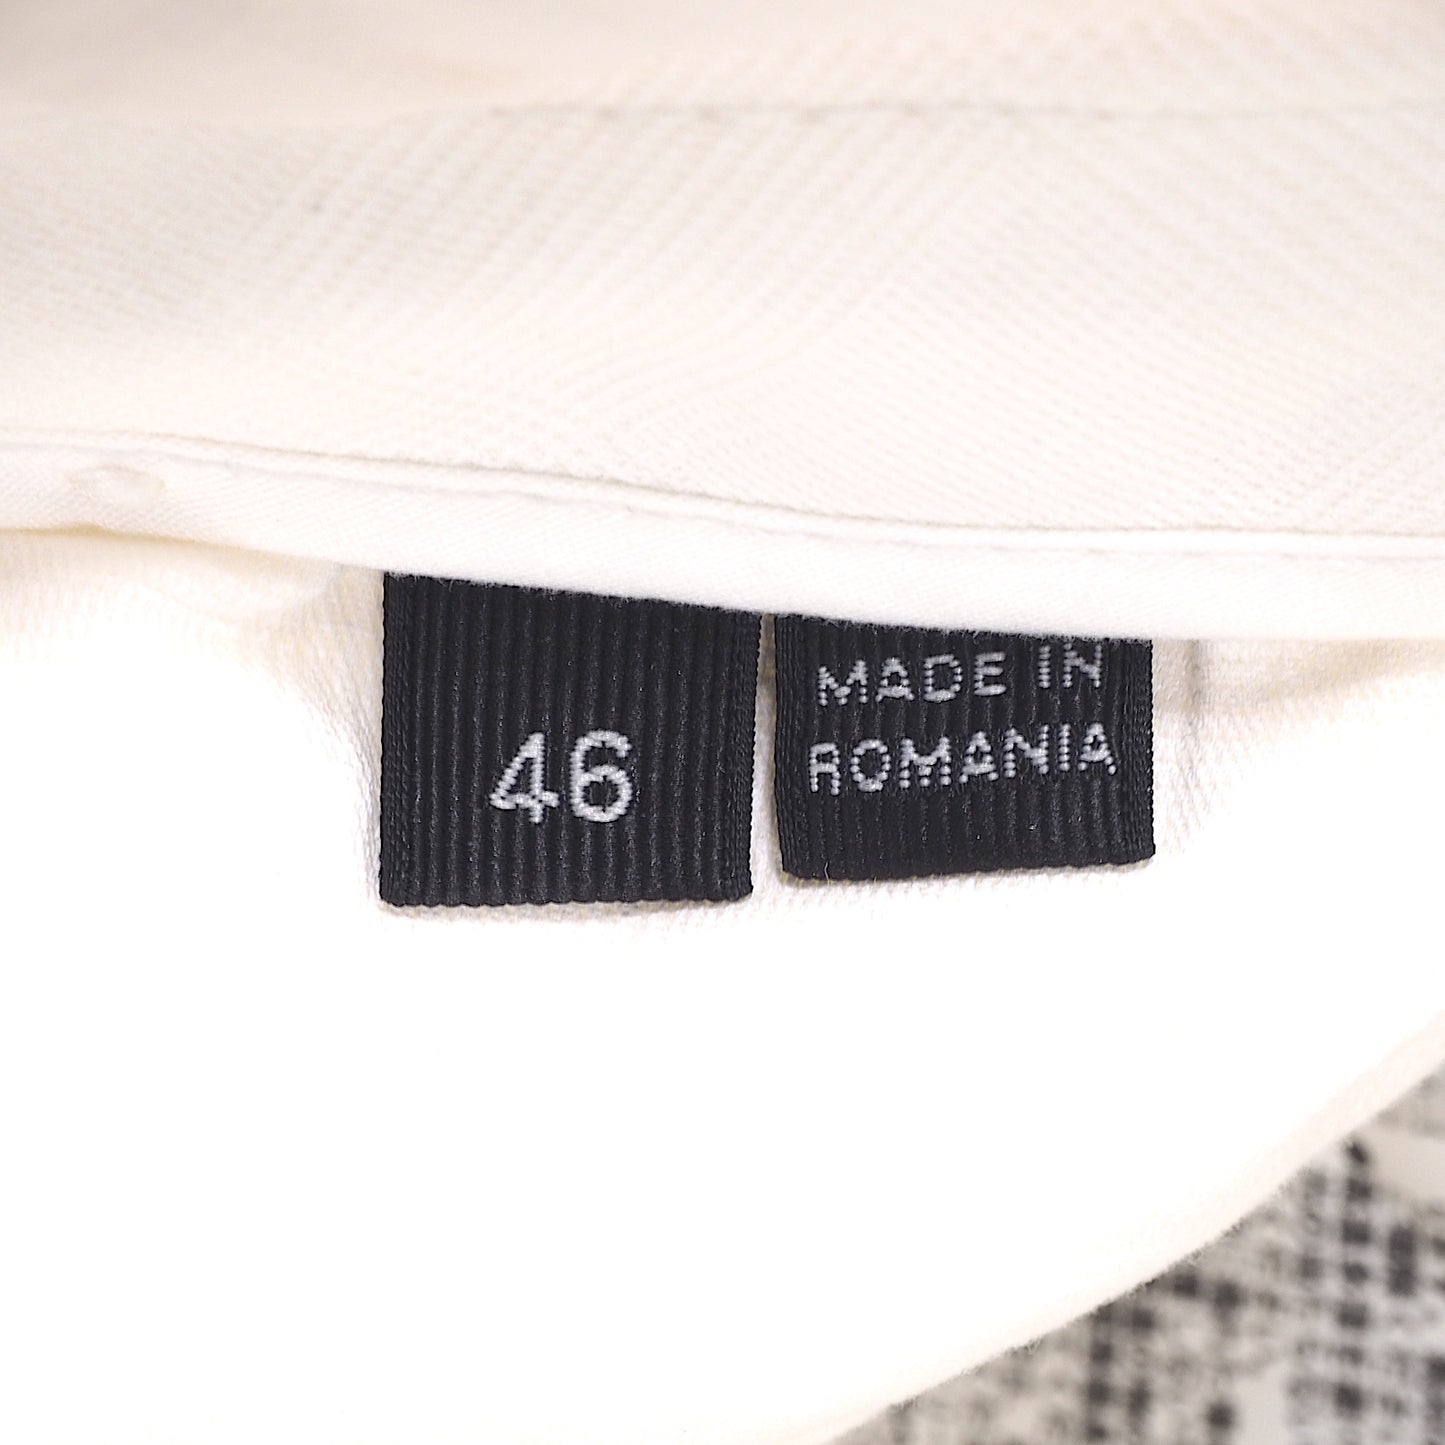 エルメネジルドゼニア Ermenegildo Zegna イタリア製 スラックス パンツ 46 ホワイト メンズ 4-WA045